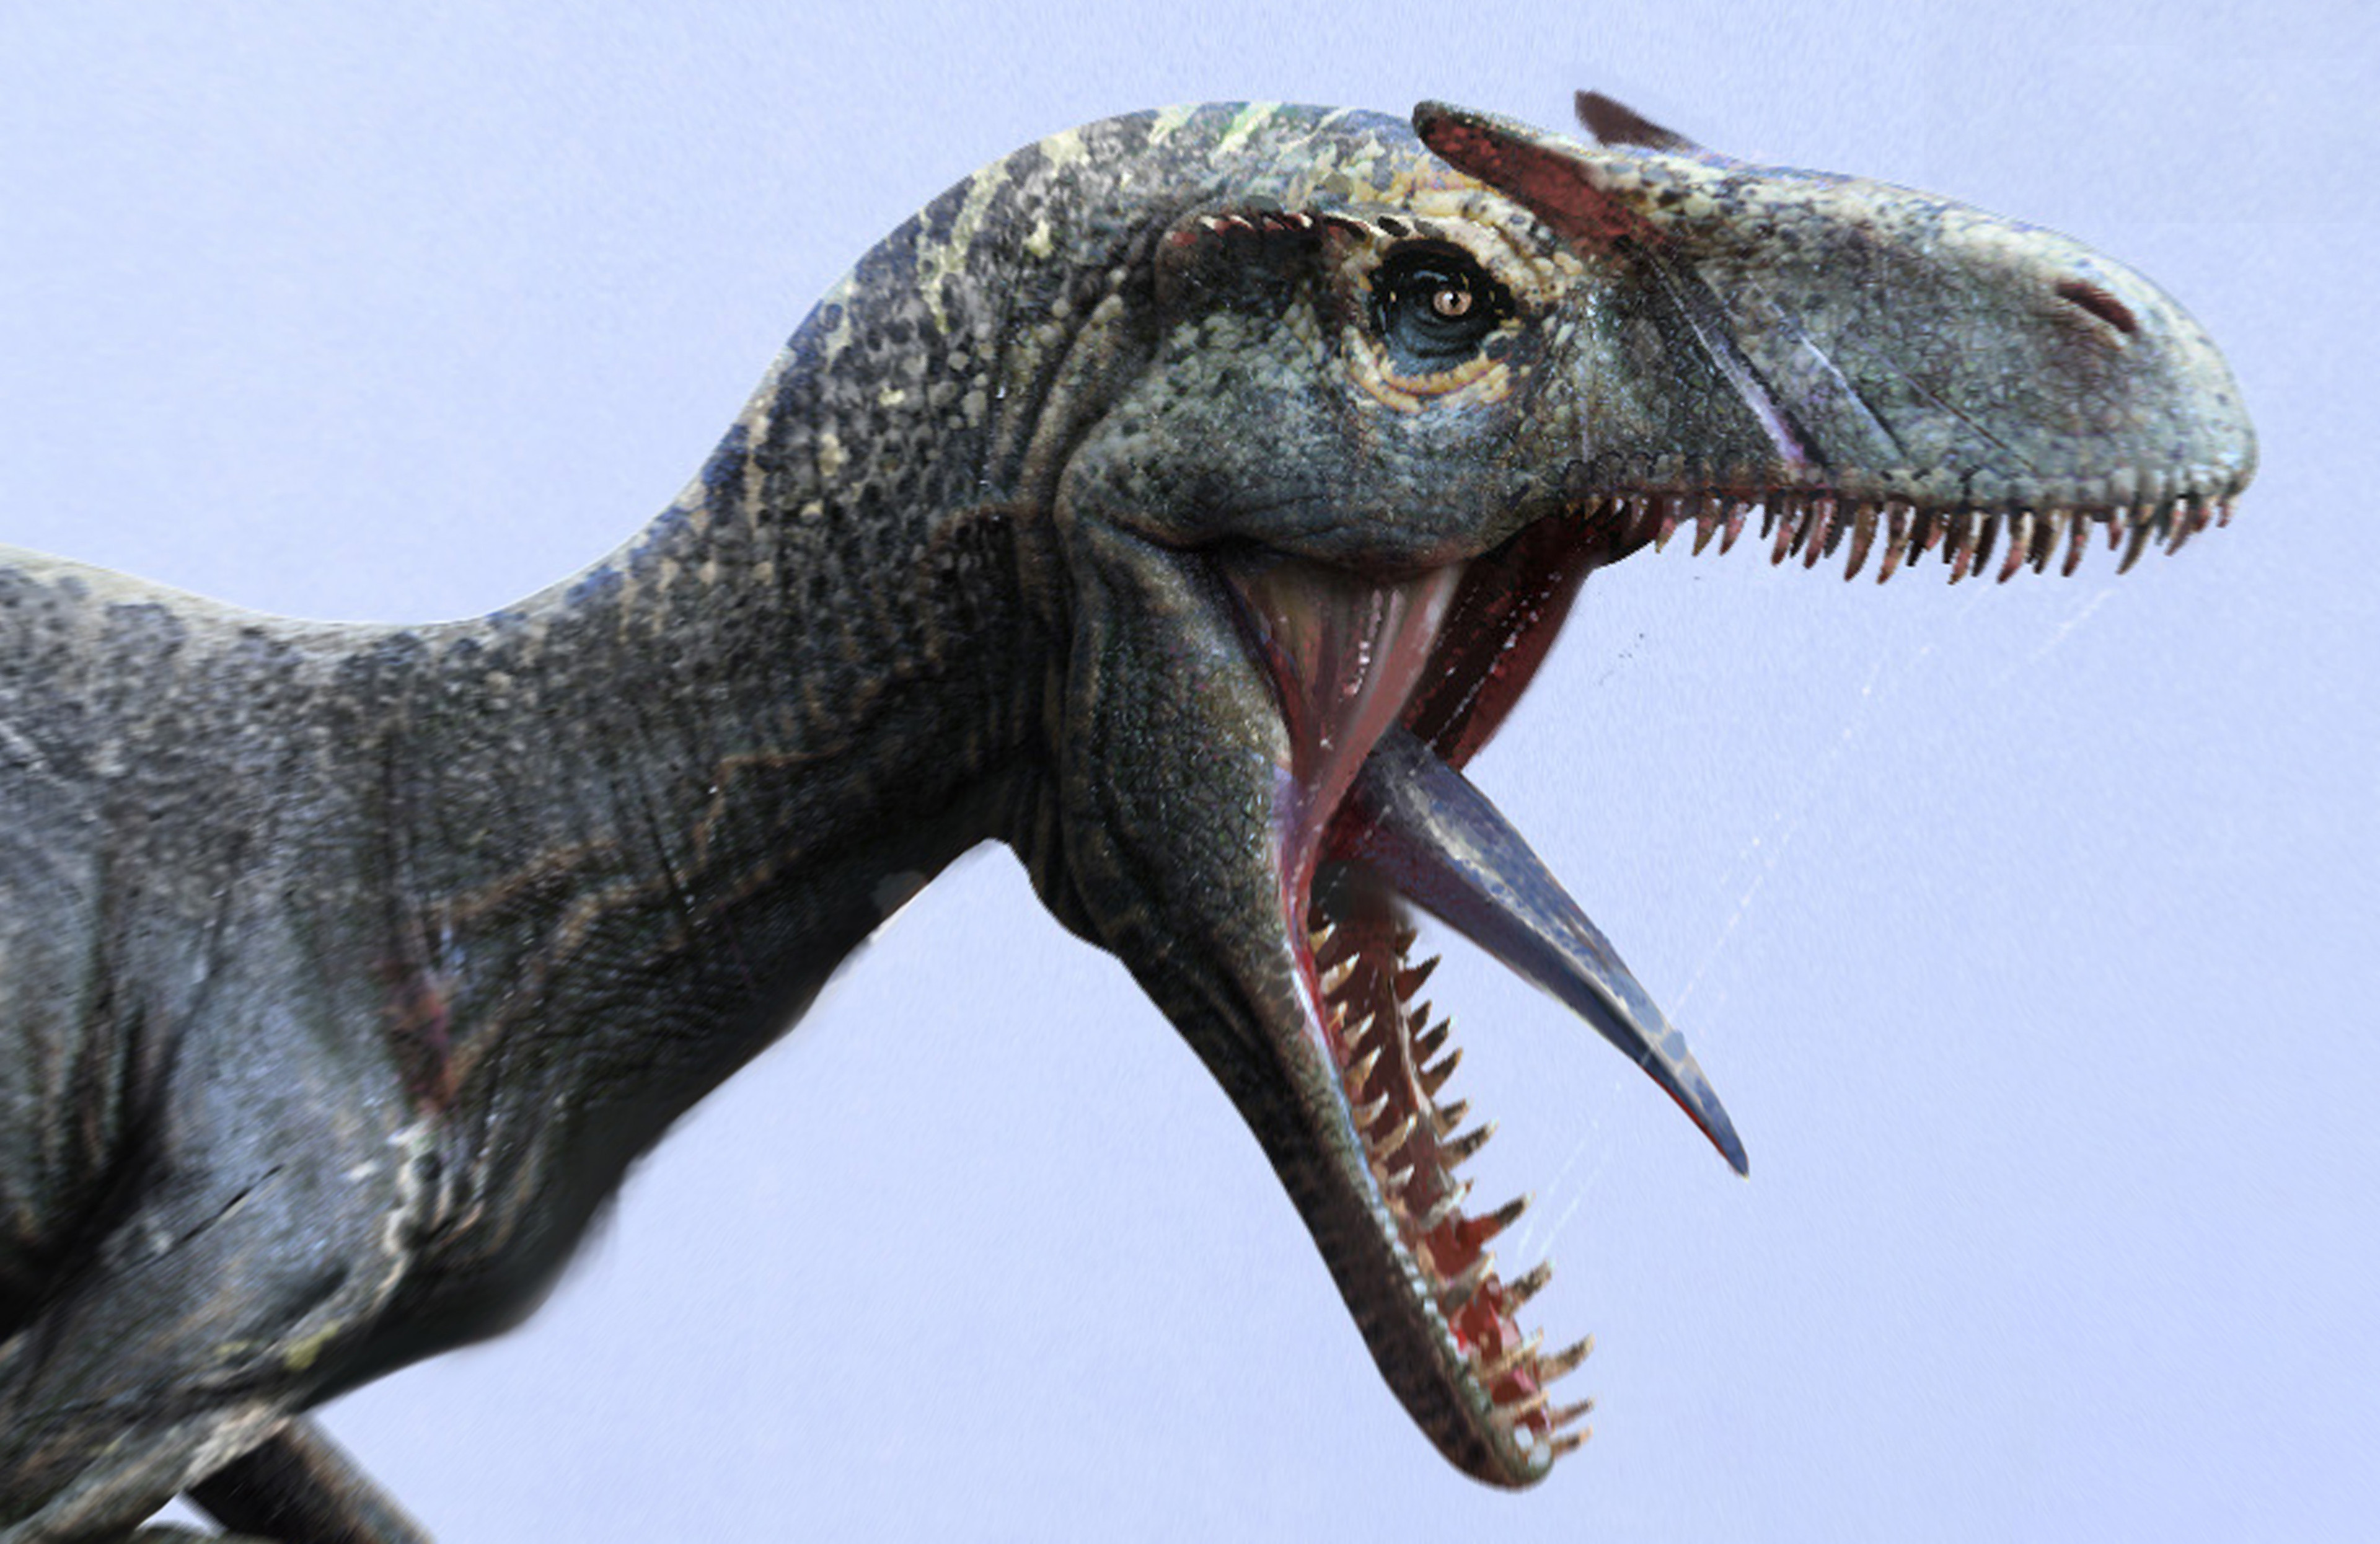 Jama Jurabaev - Jurassic World: Fallen Kingdom - Dinosaur designs.